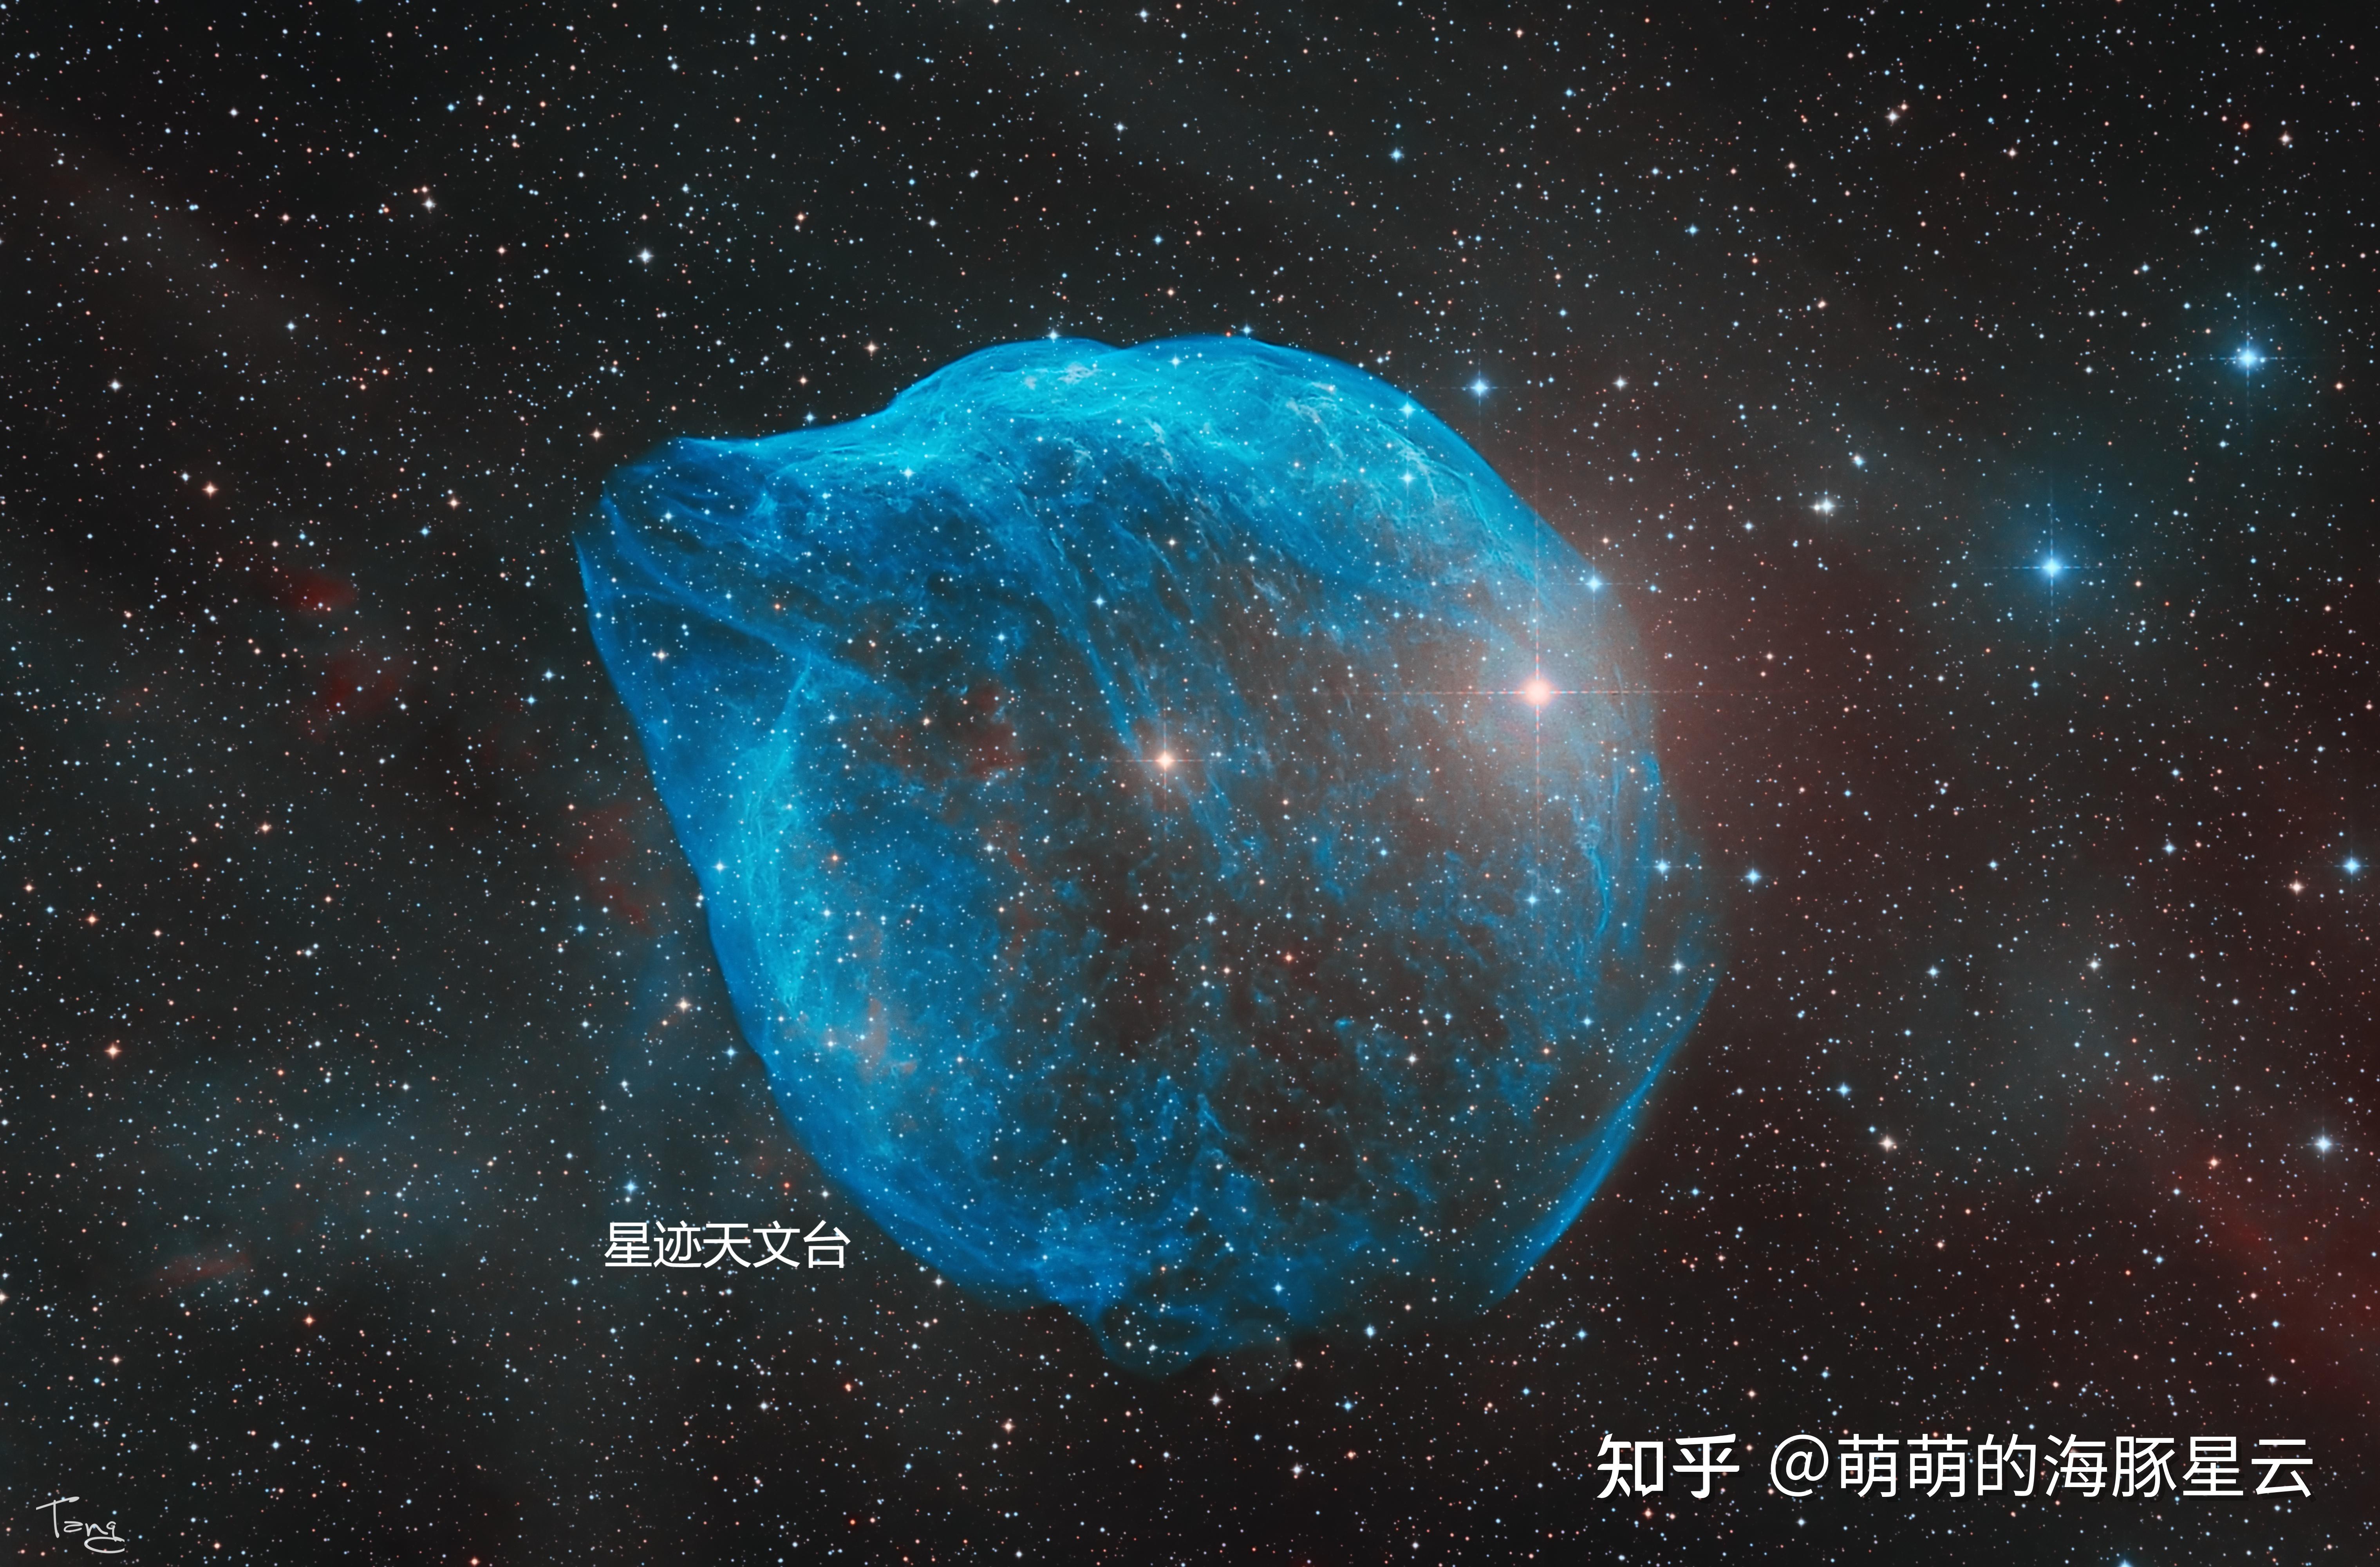 上帝之眼m74蓝马头星云下面为天文台出图星迹远程天文台目前拥有已